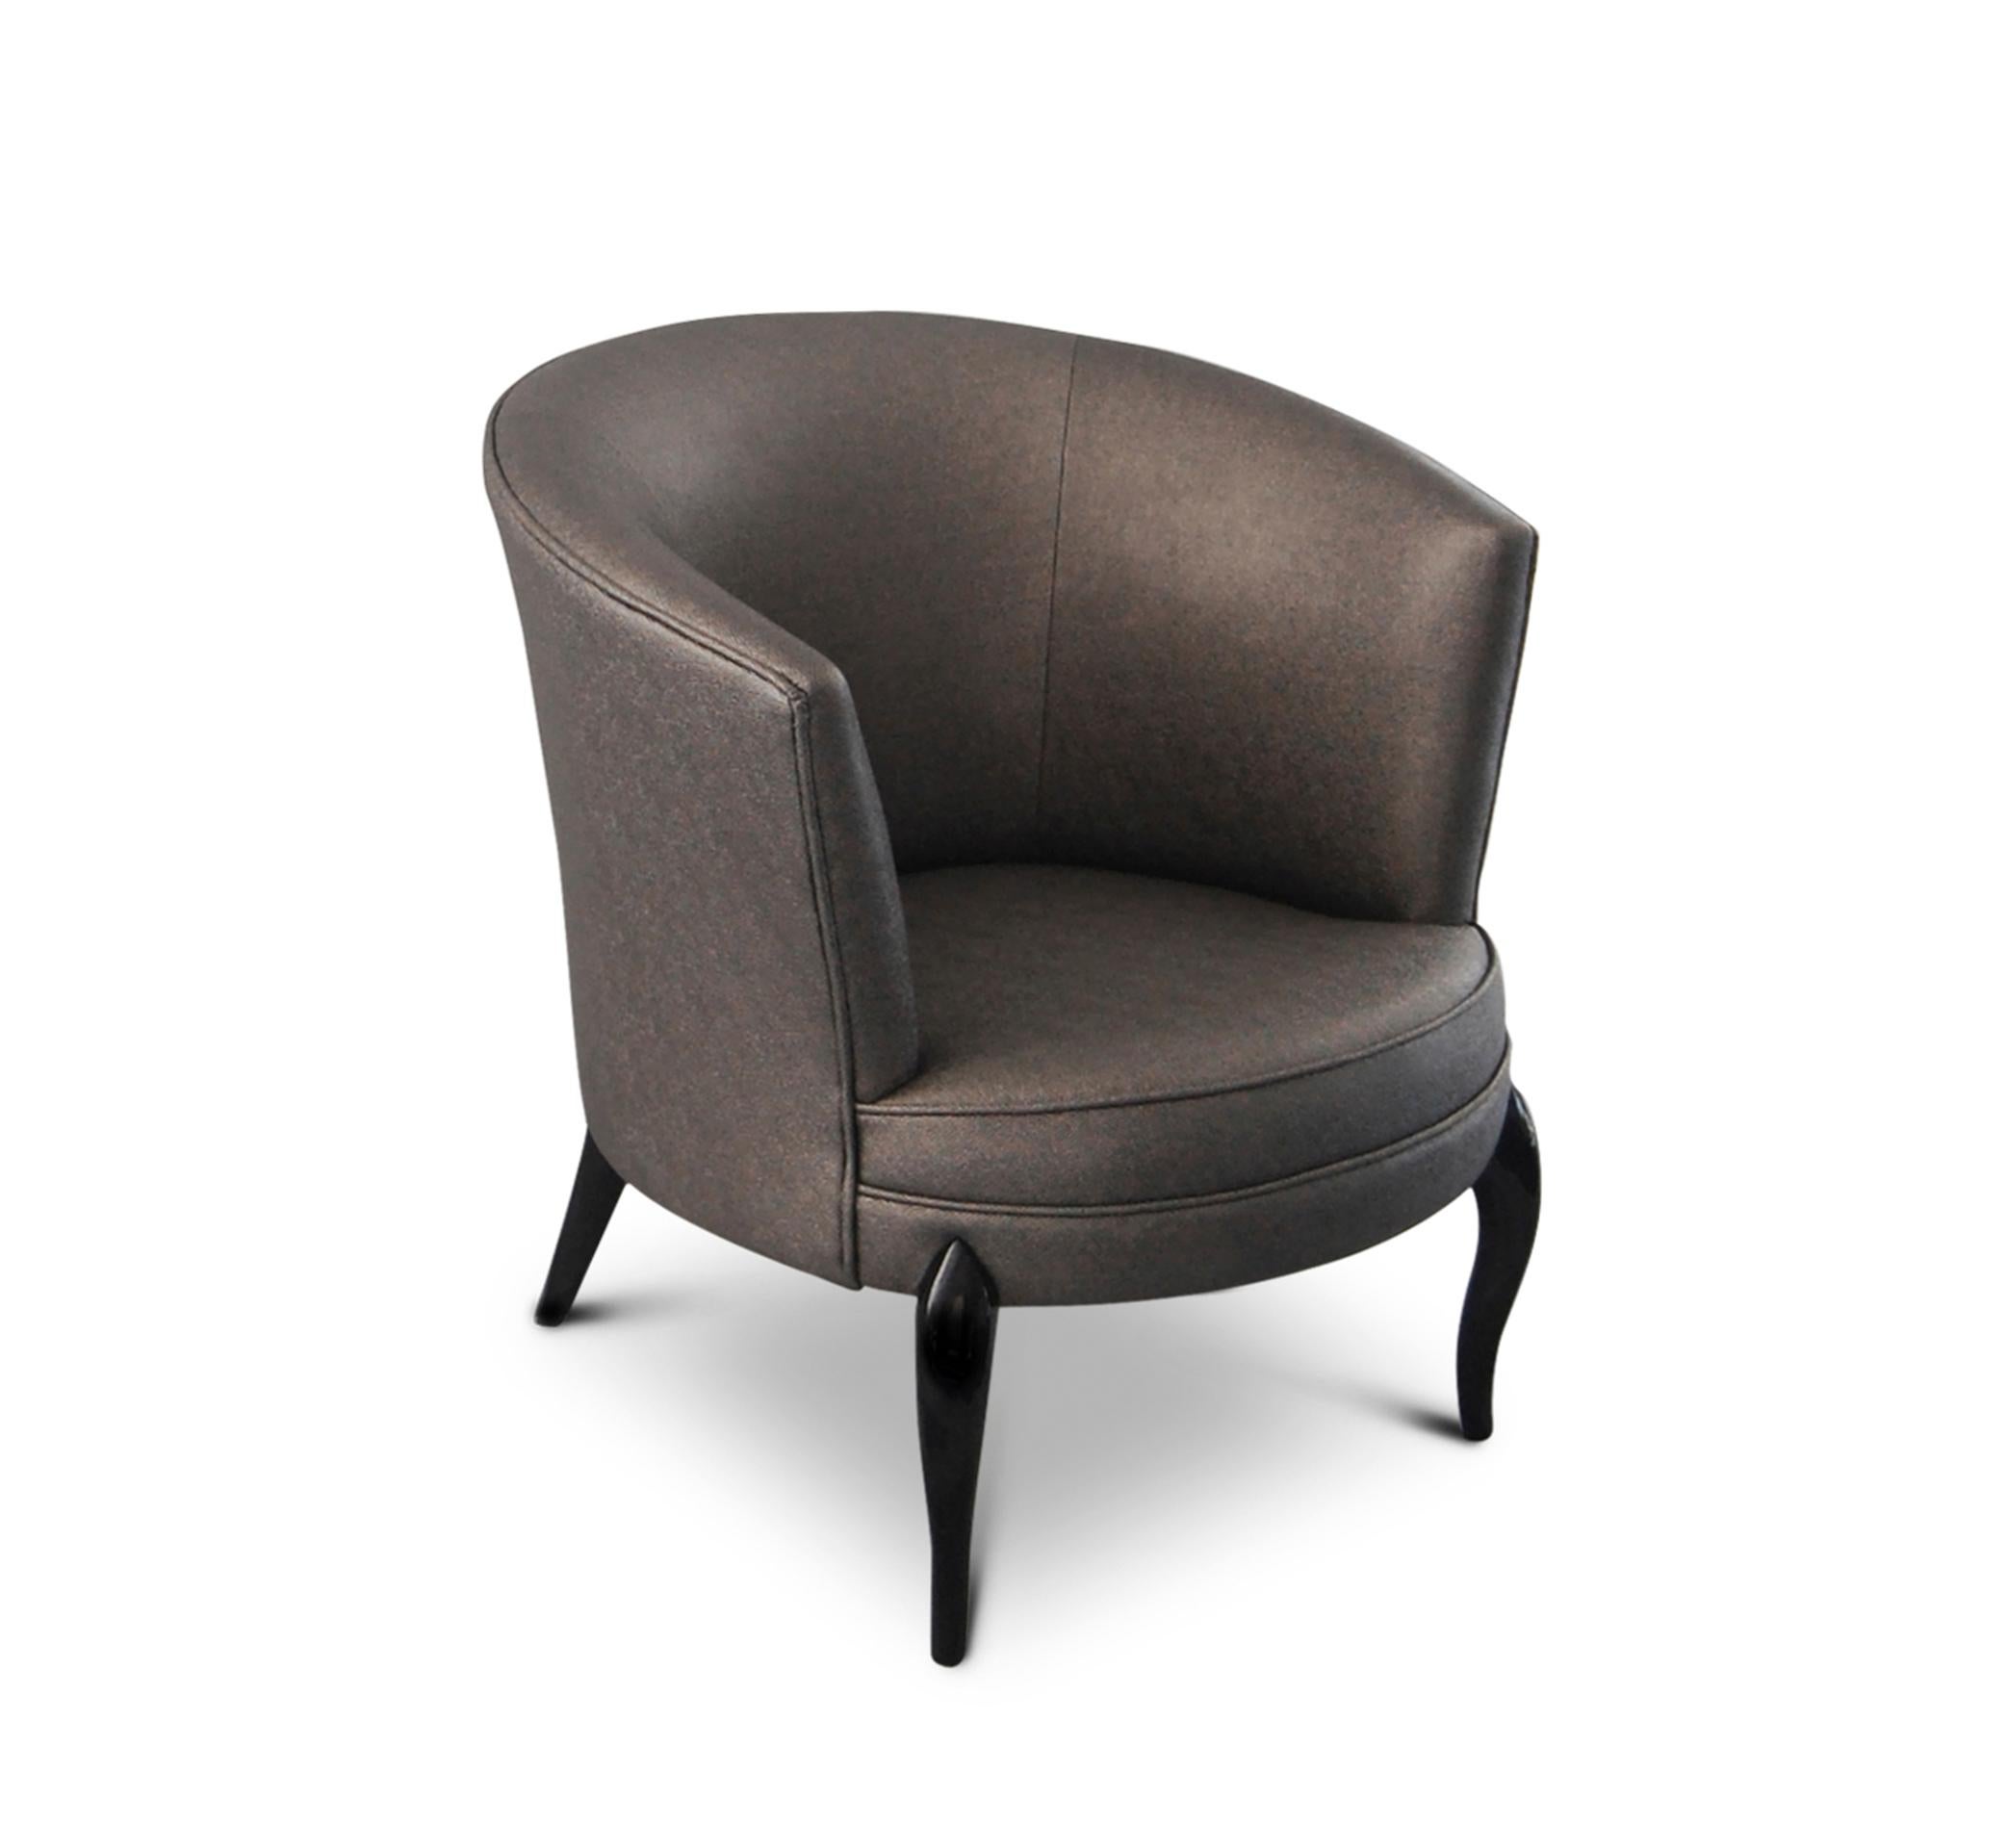 Portuguese Délice Chair For Sale